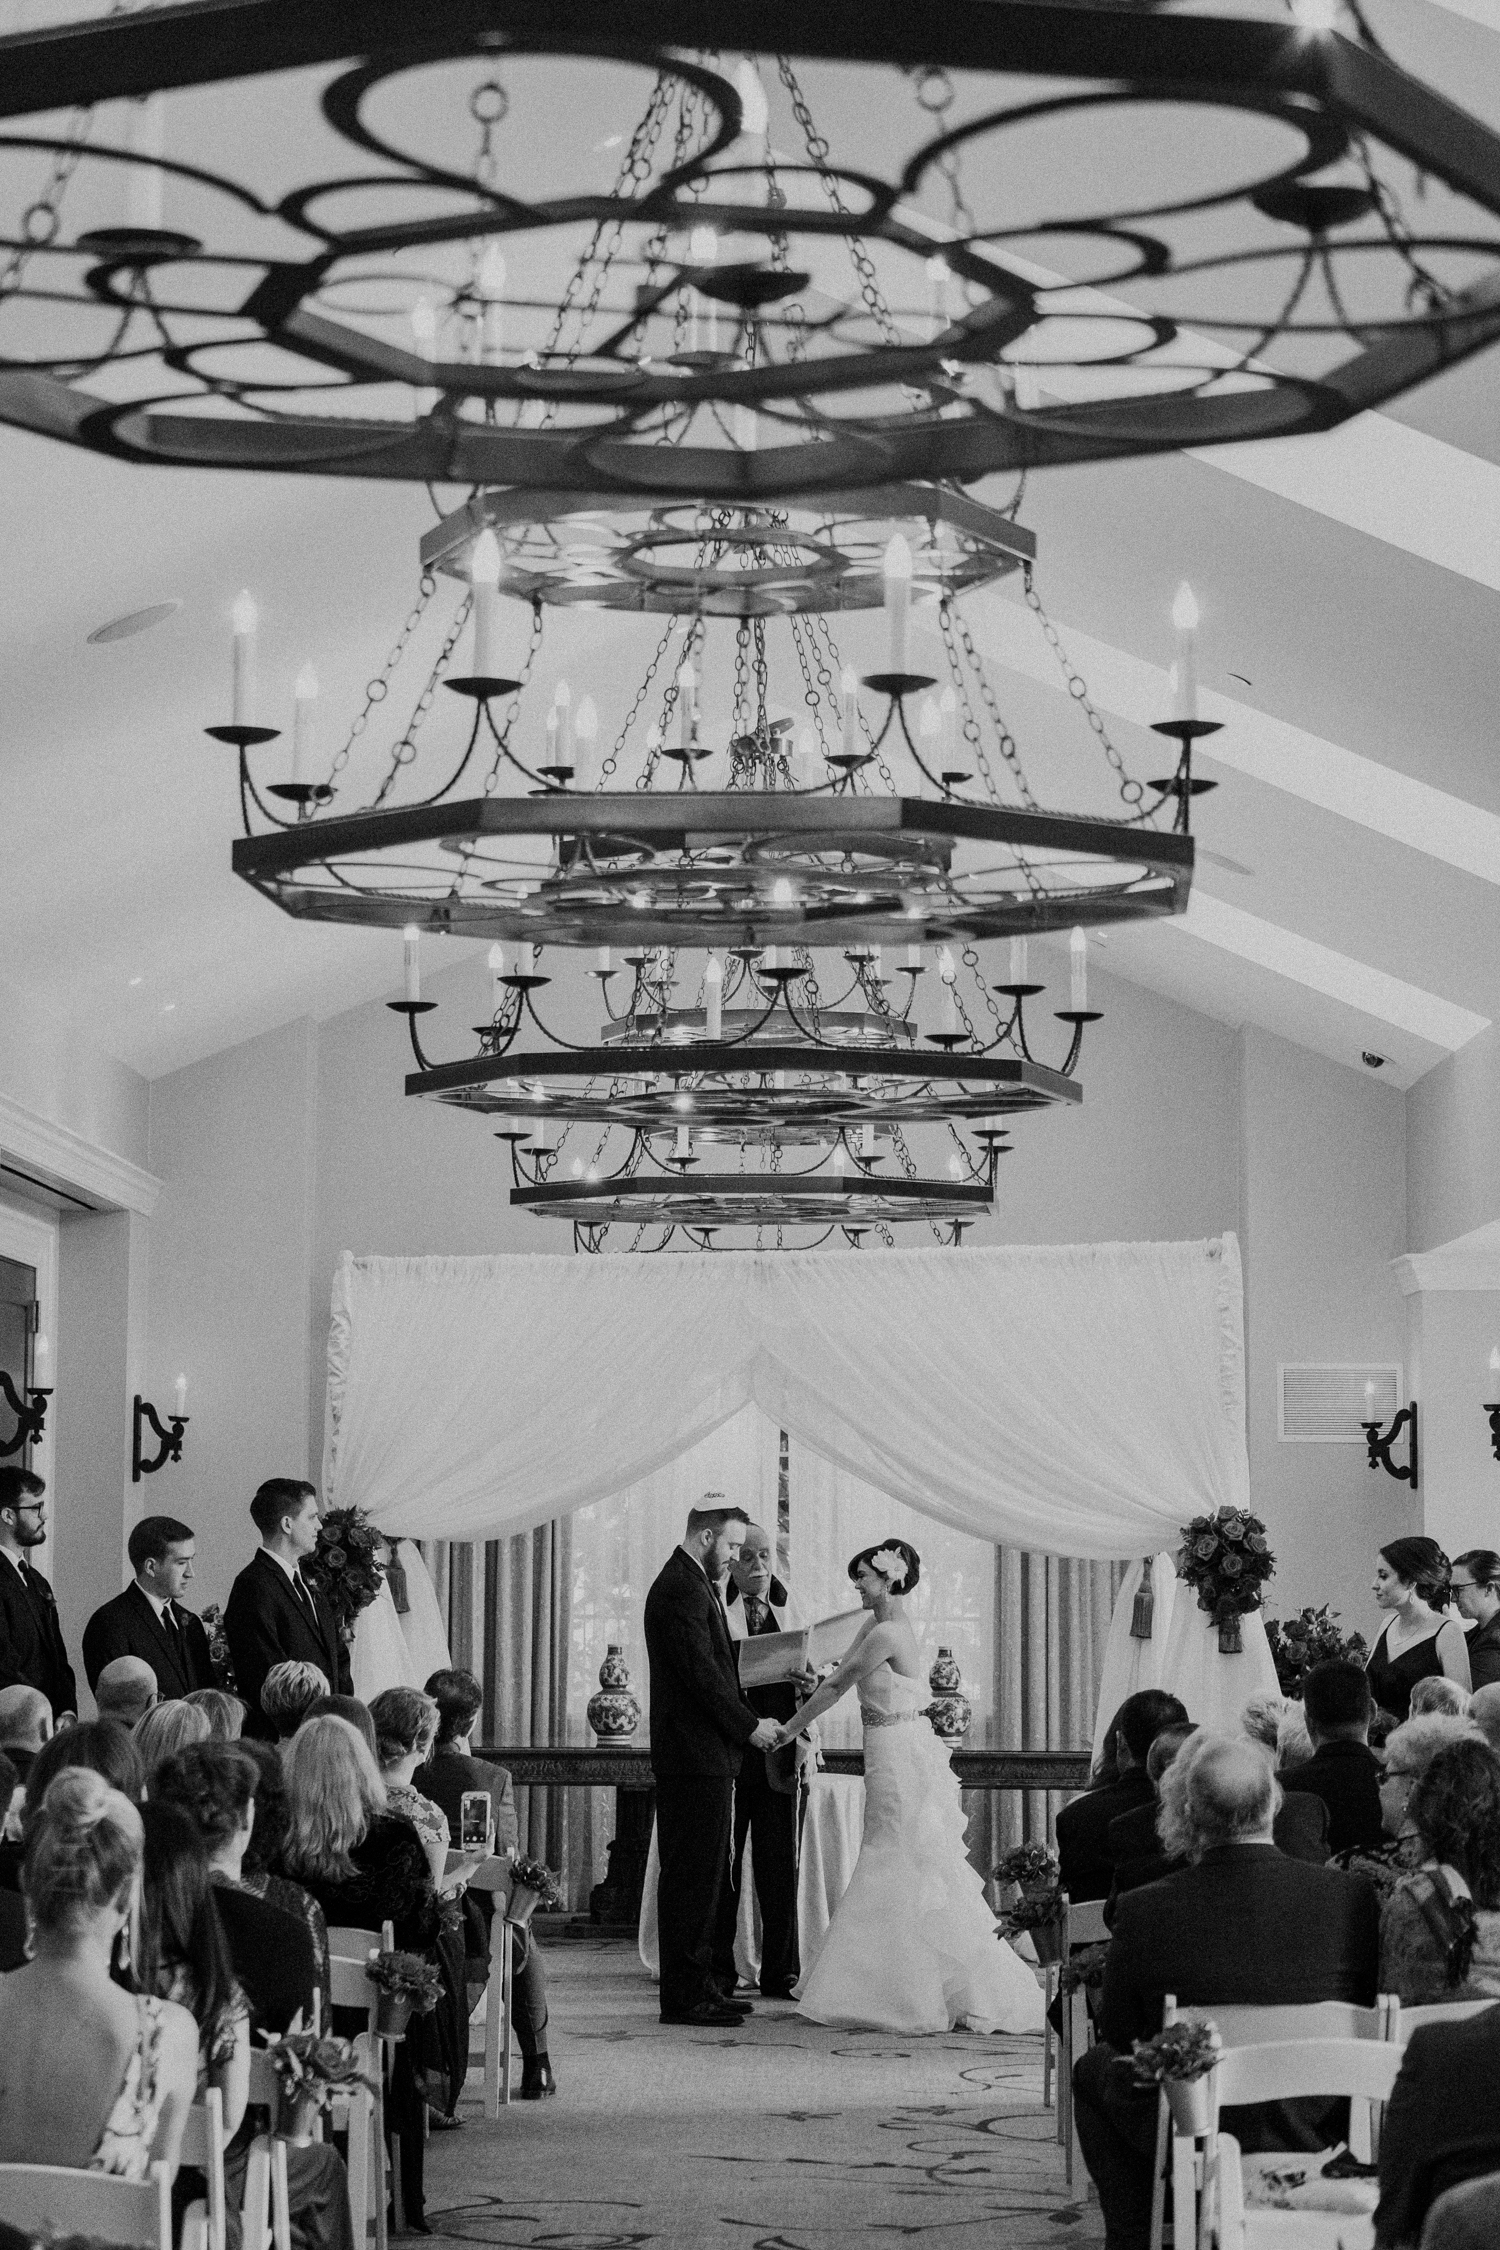 Indoor salamander resort wedding ceremony under chandeliers